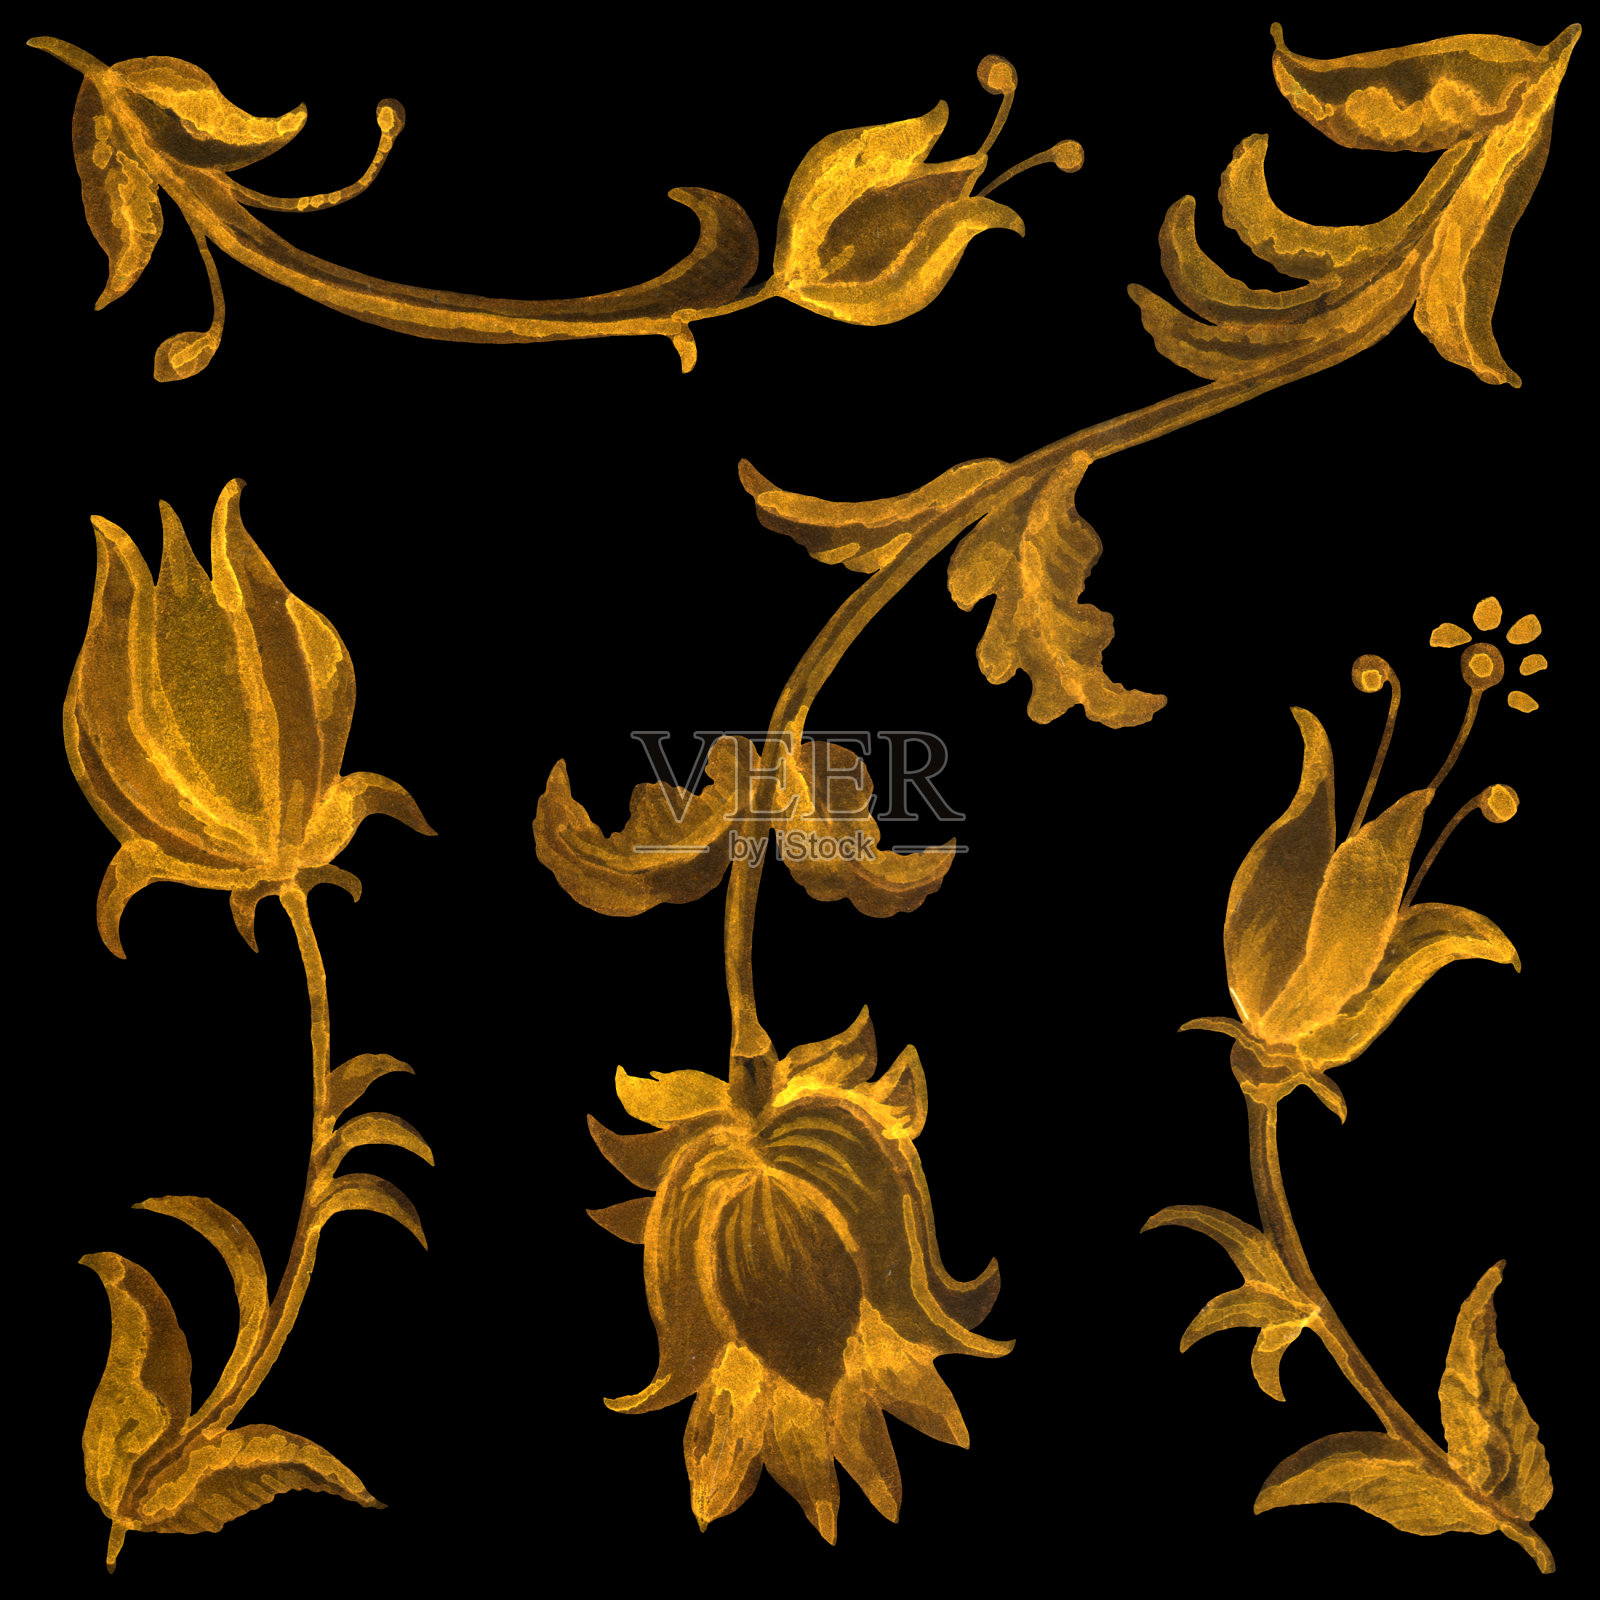 用手工绘制的巴洛克式黄金卷轴、花、叶和树枝的瓷砖插画图片素材